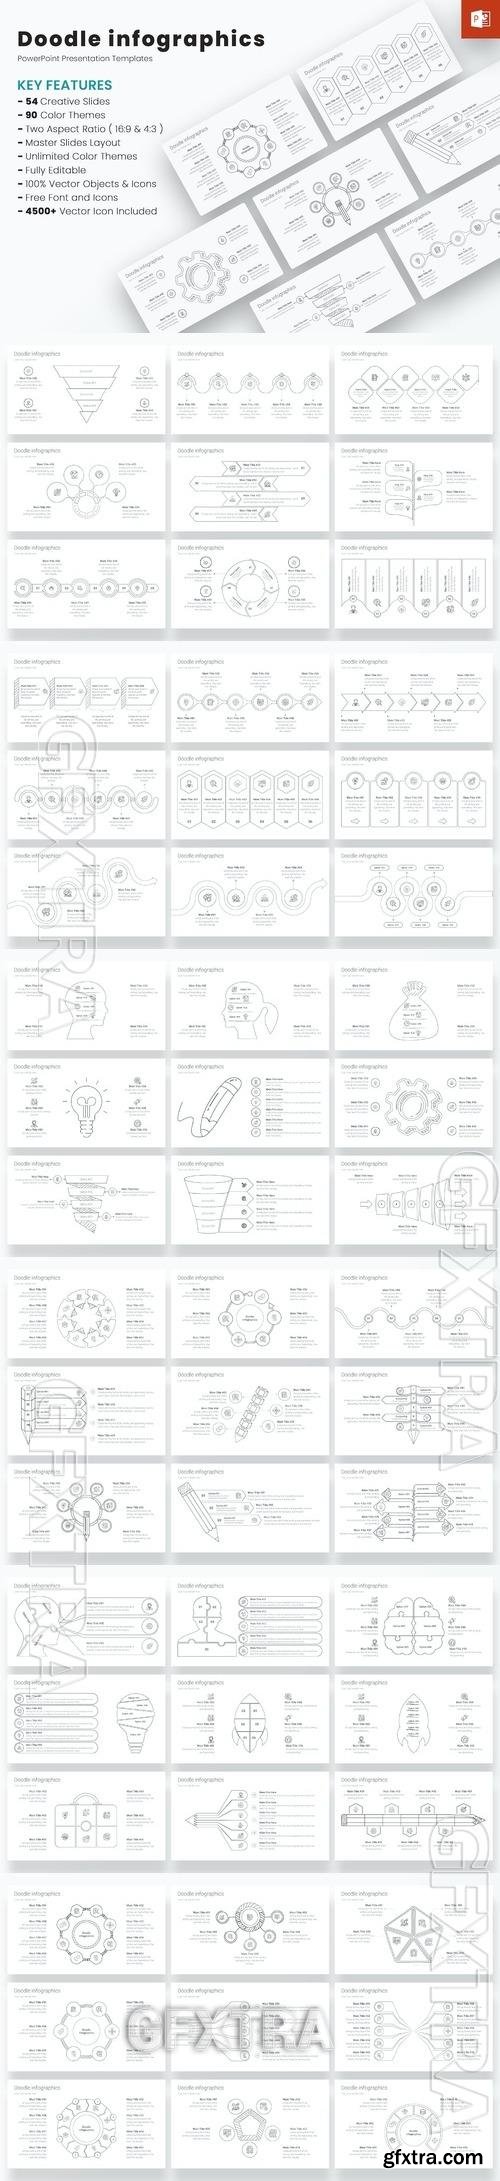 Doodle infographics PowerPoint Templates JL2VS9Z